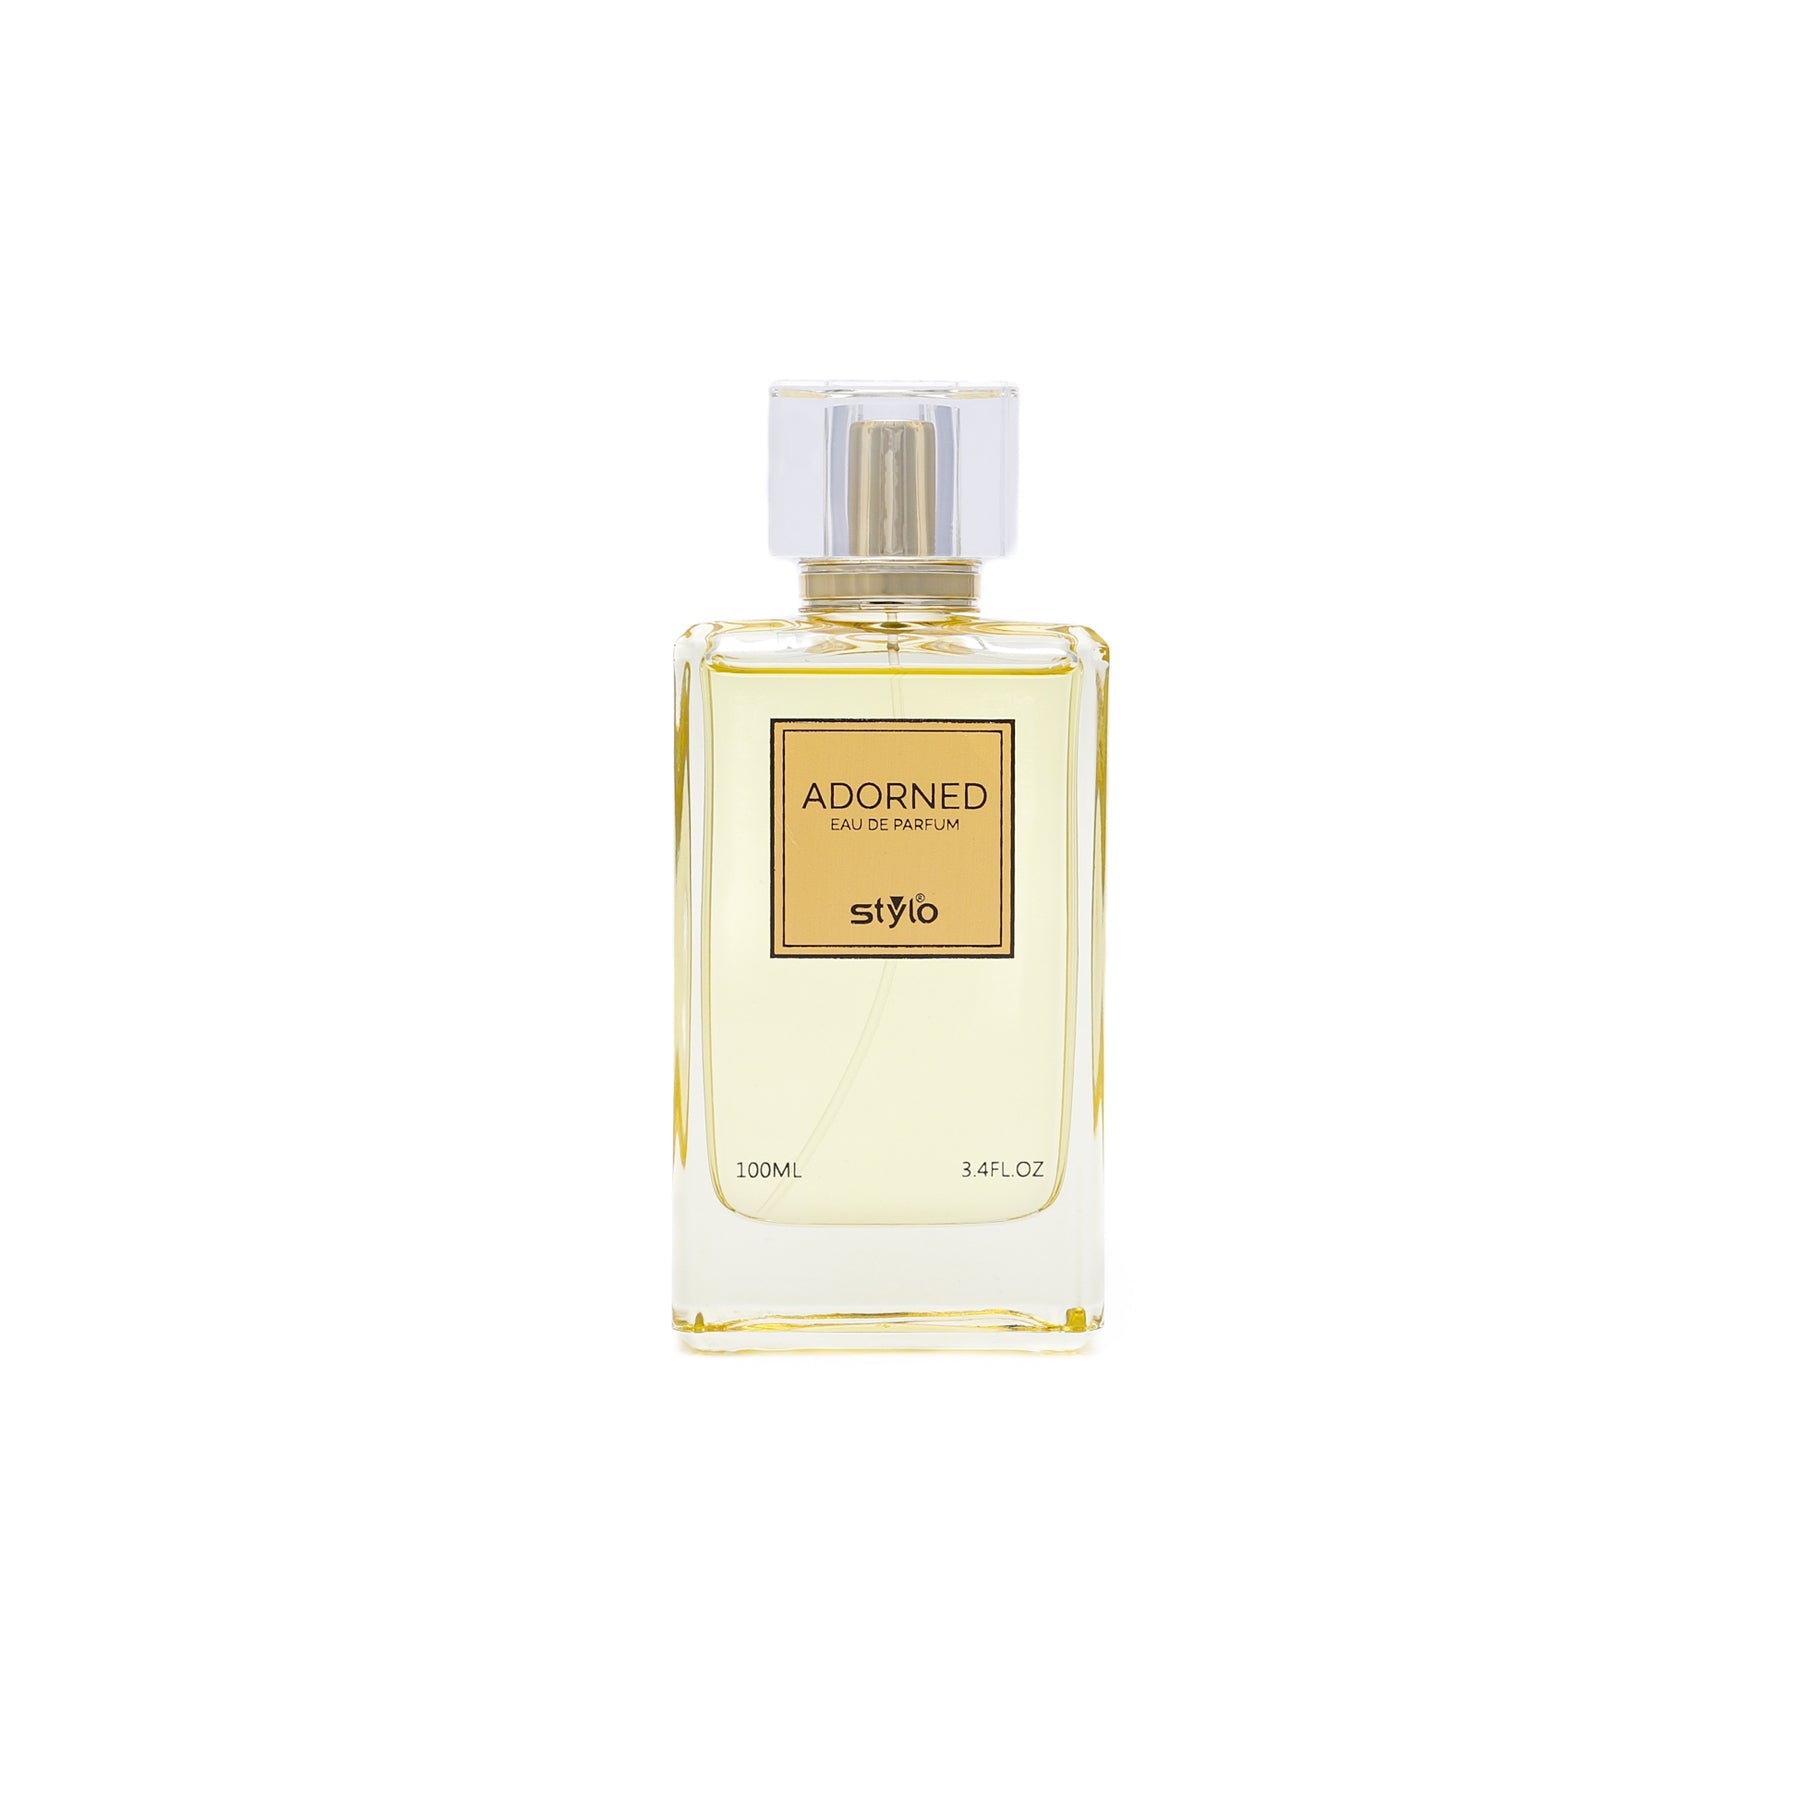 ADORNED Perfume For Women PR0011